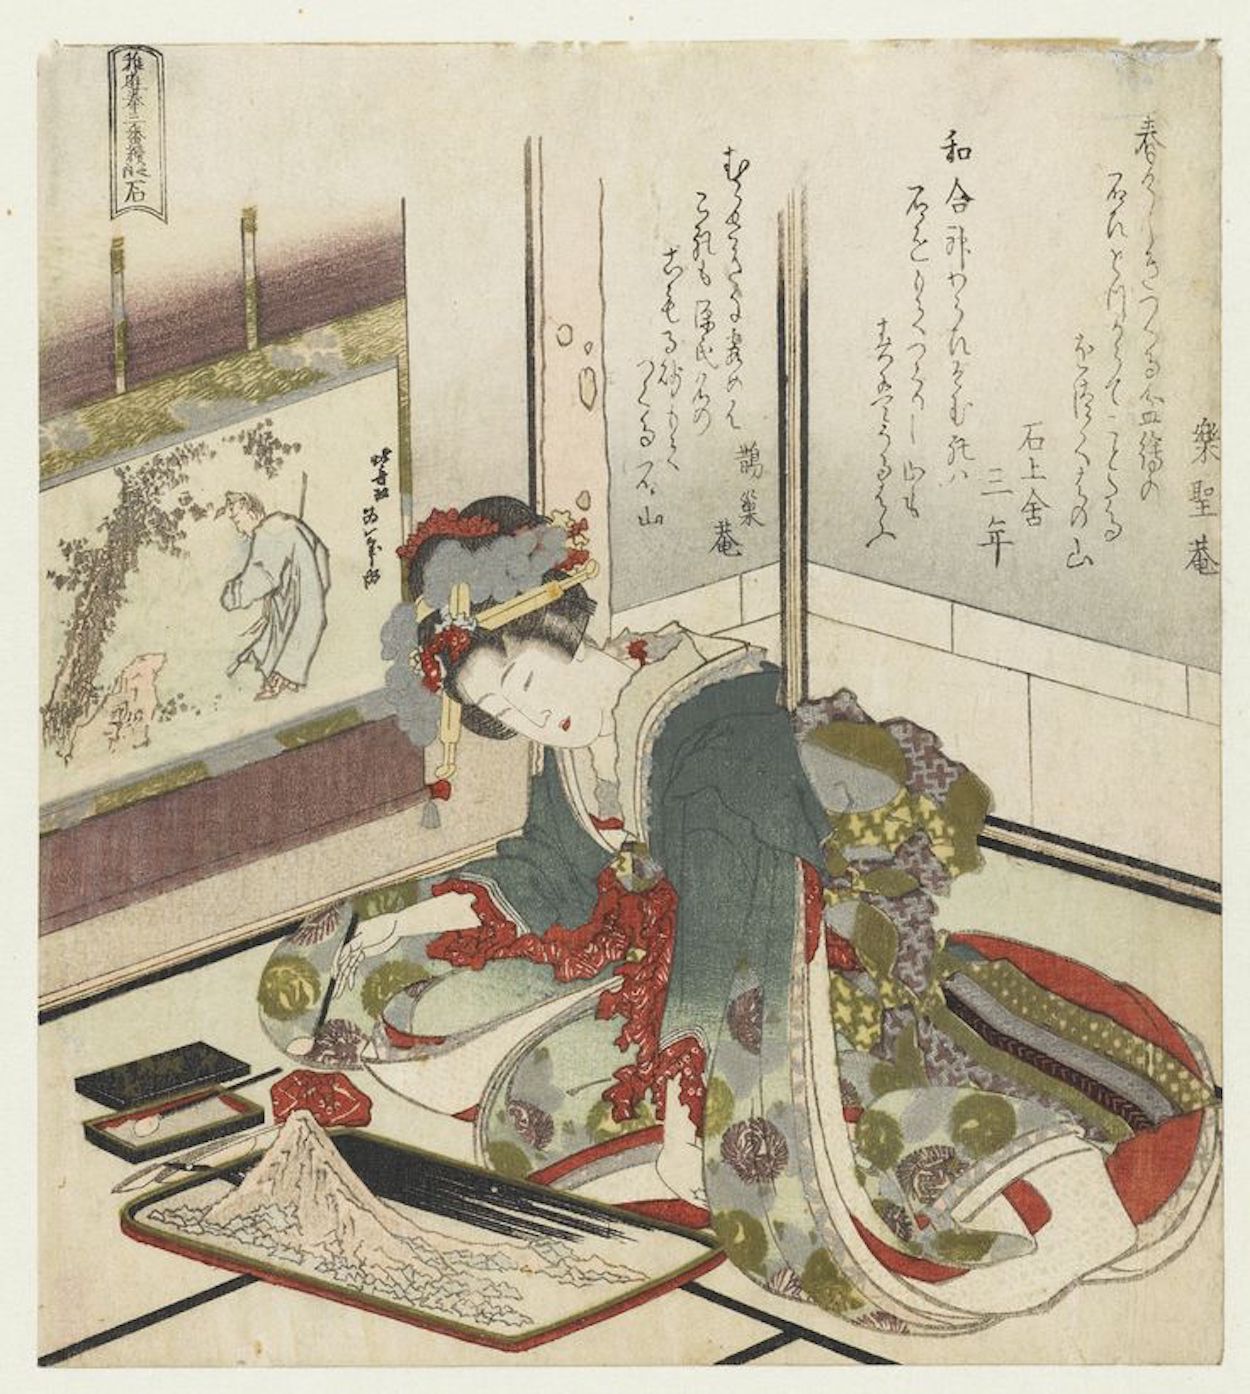 Камінь by Katsushika Hokusai - 1823 